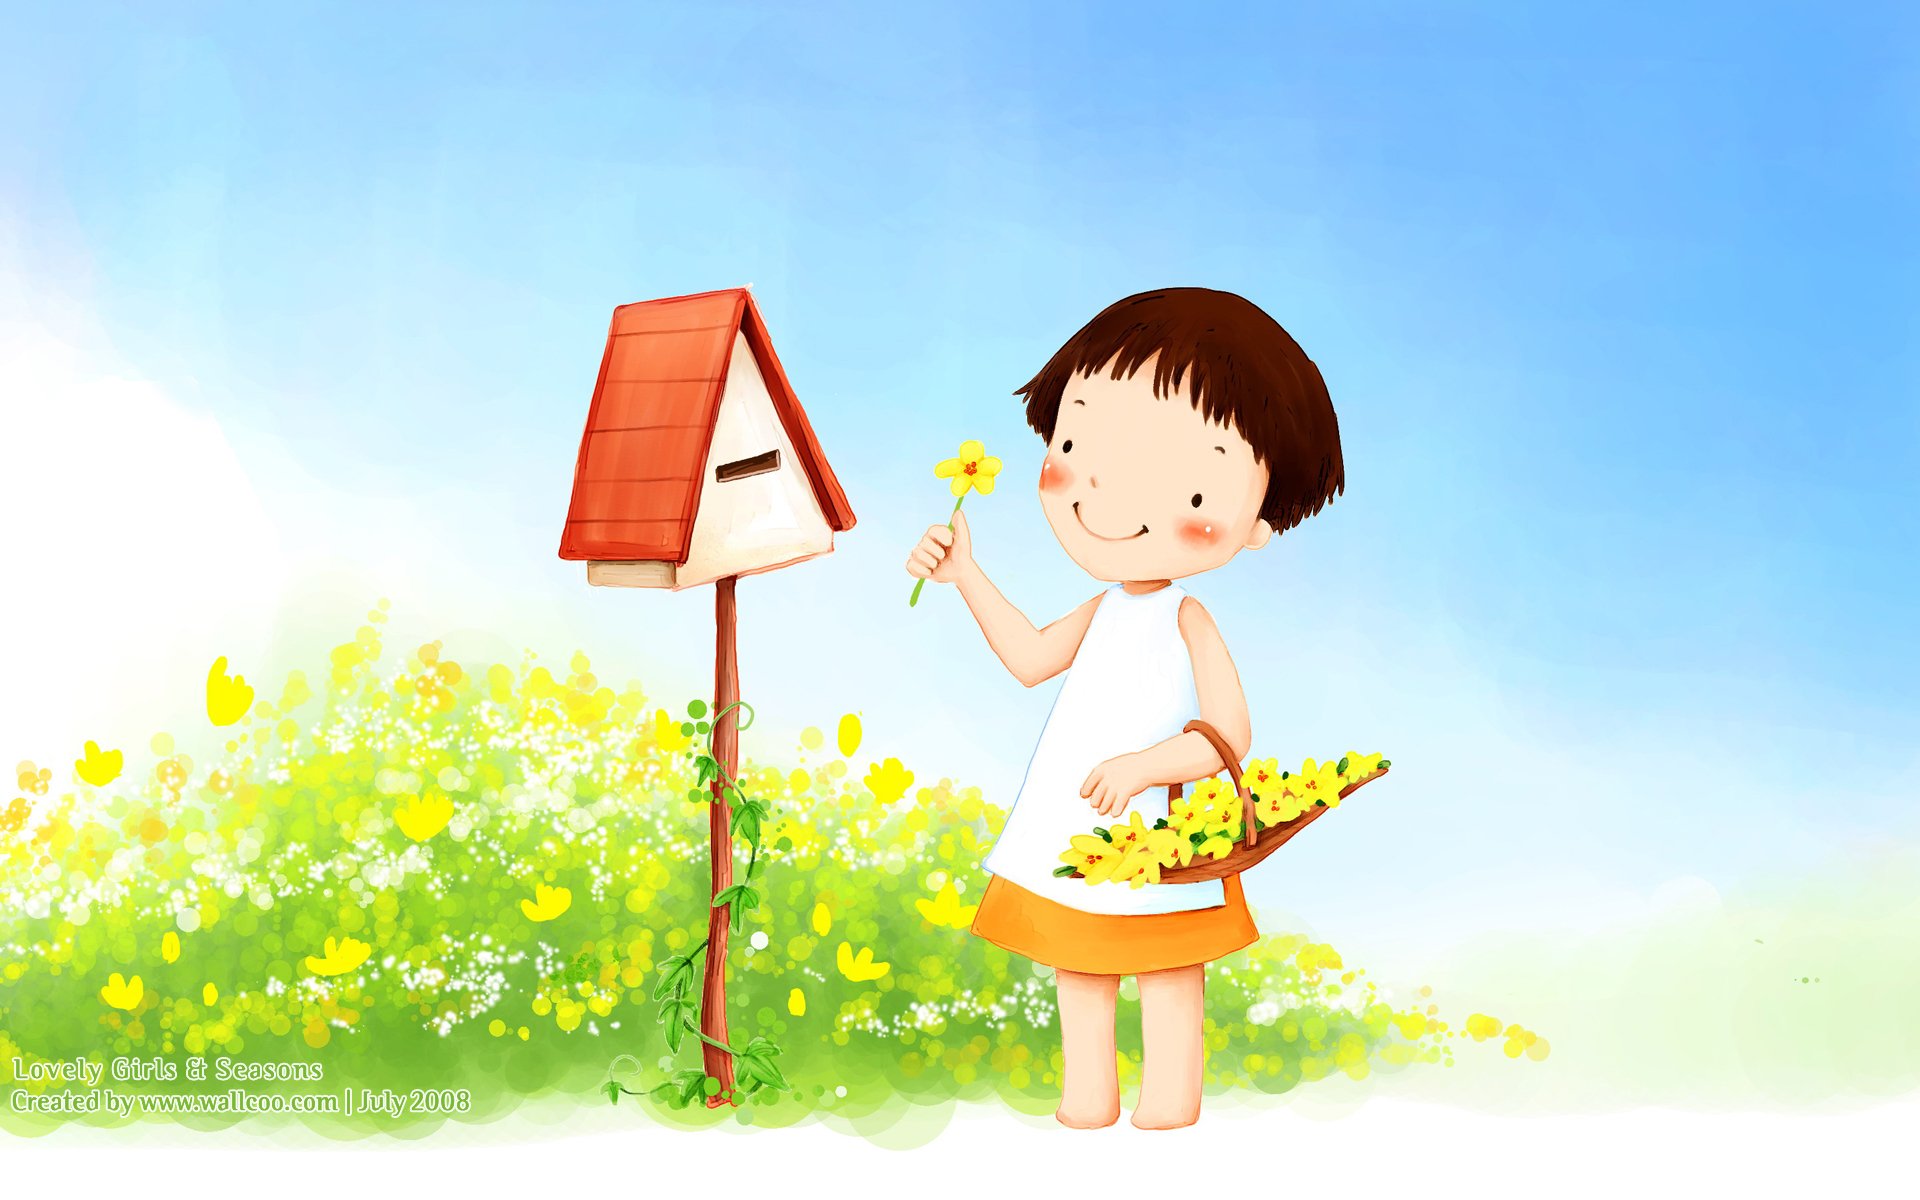 壁纸1280×1024韩国卡通小女孩插画壁纸,韩国儿童插画-可爱小女孩壁纸图片-插画壁纸-插画图片素材-桌面壁纸